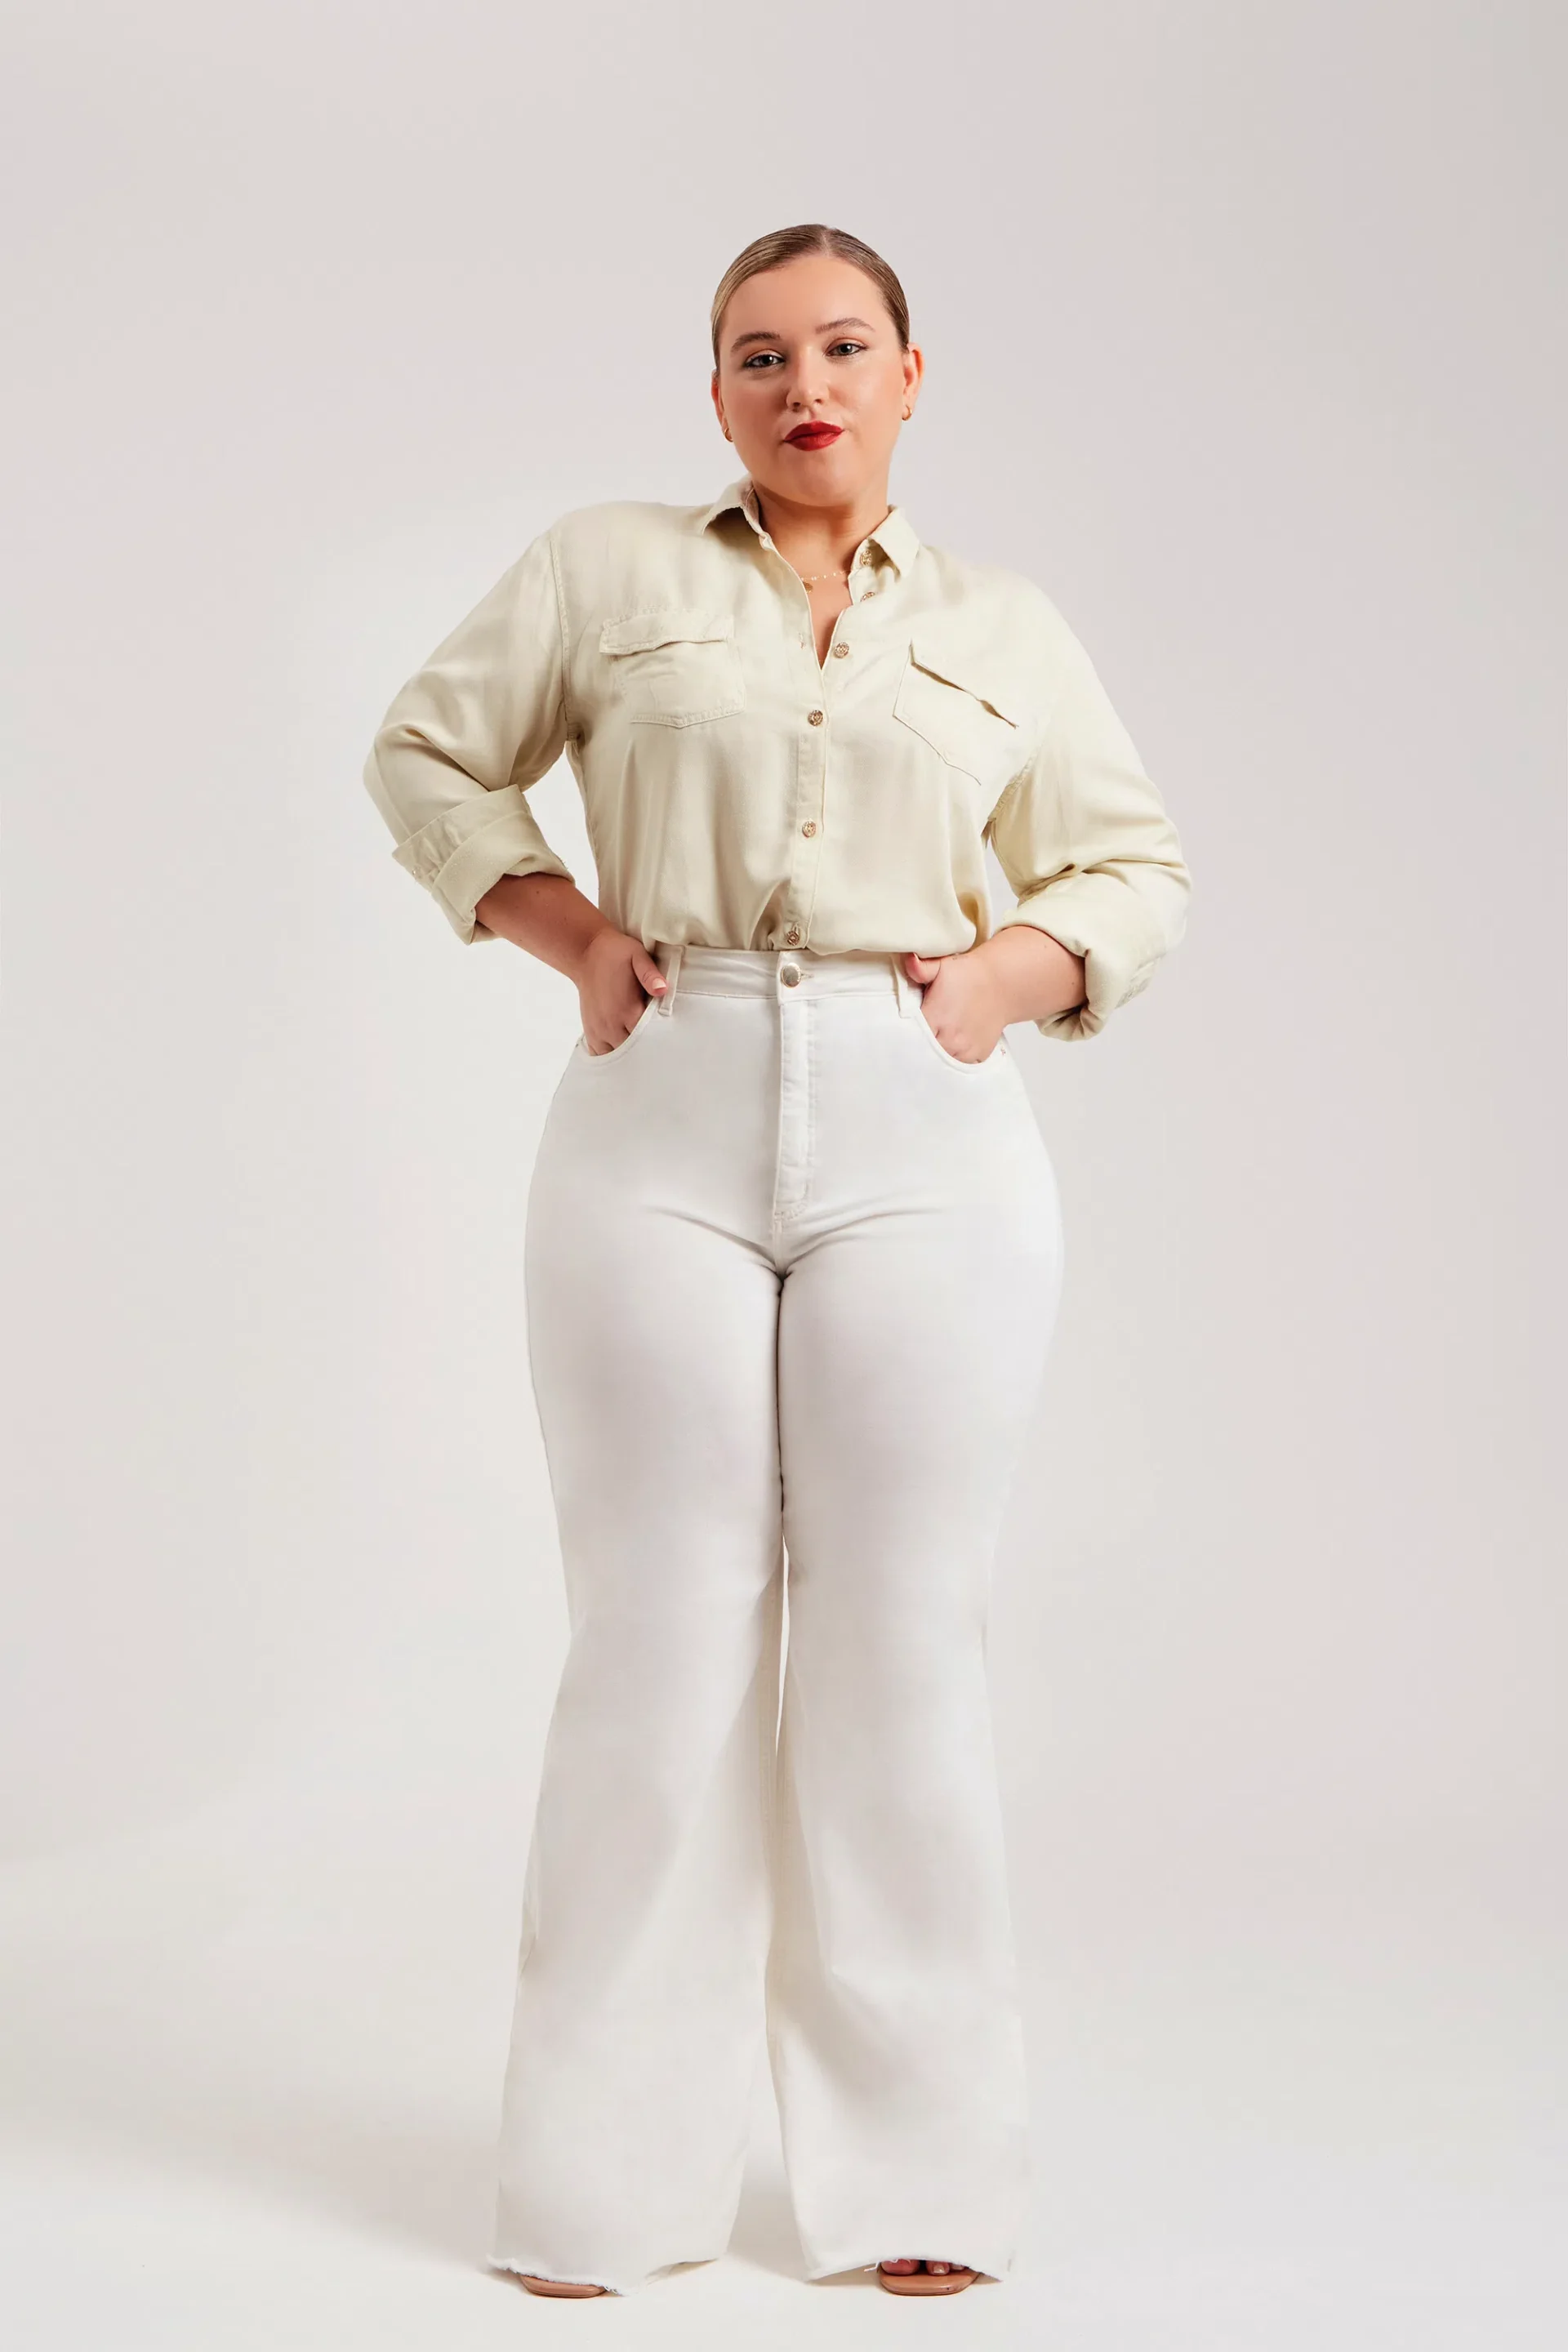 A primeira delas é composta pela Calça Jeans Modeladora Wide Leg Off White em conjunto com a Camisa Térmica Impecável.